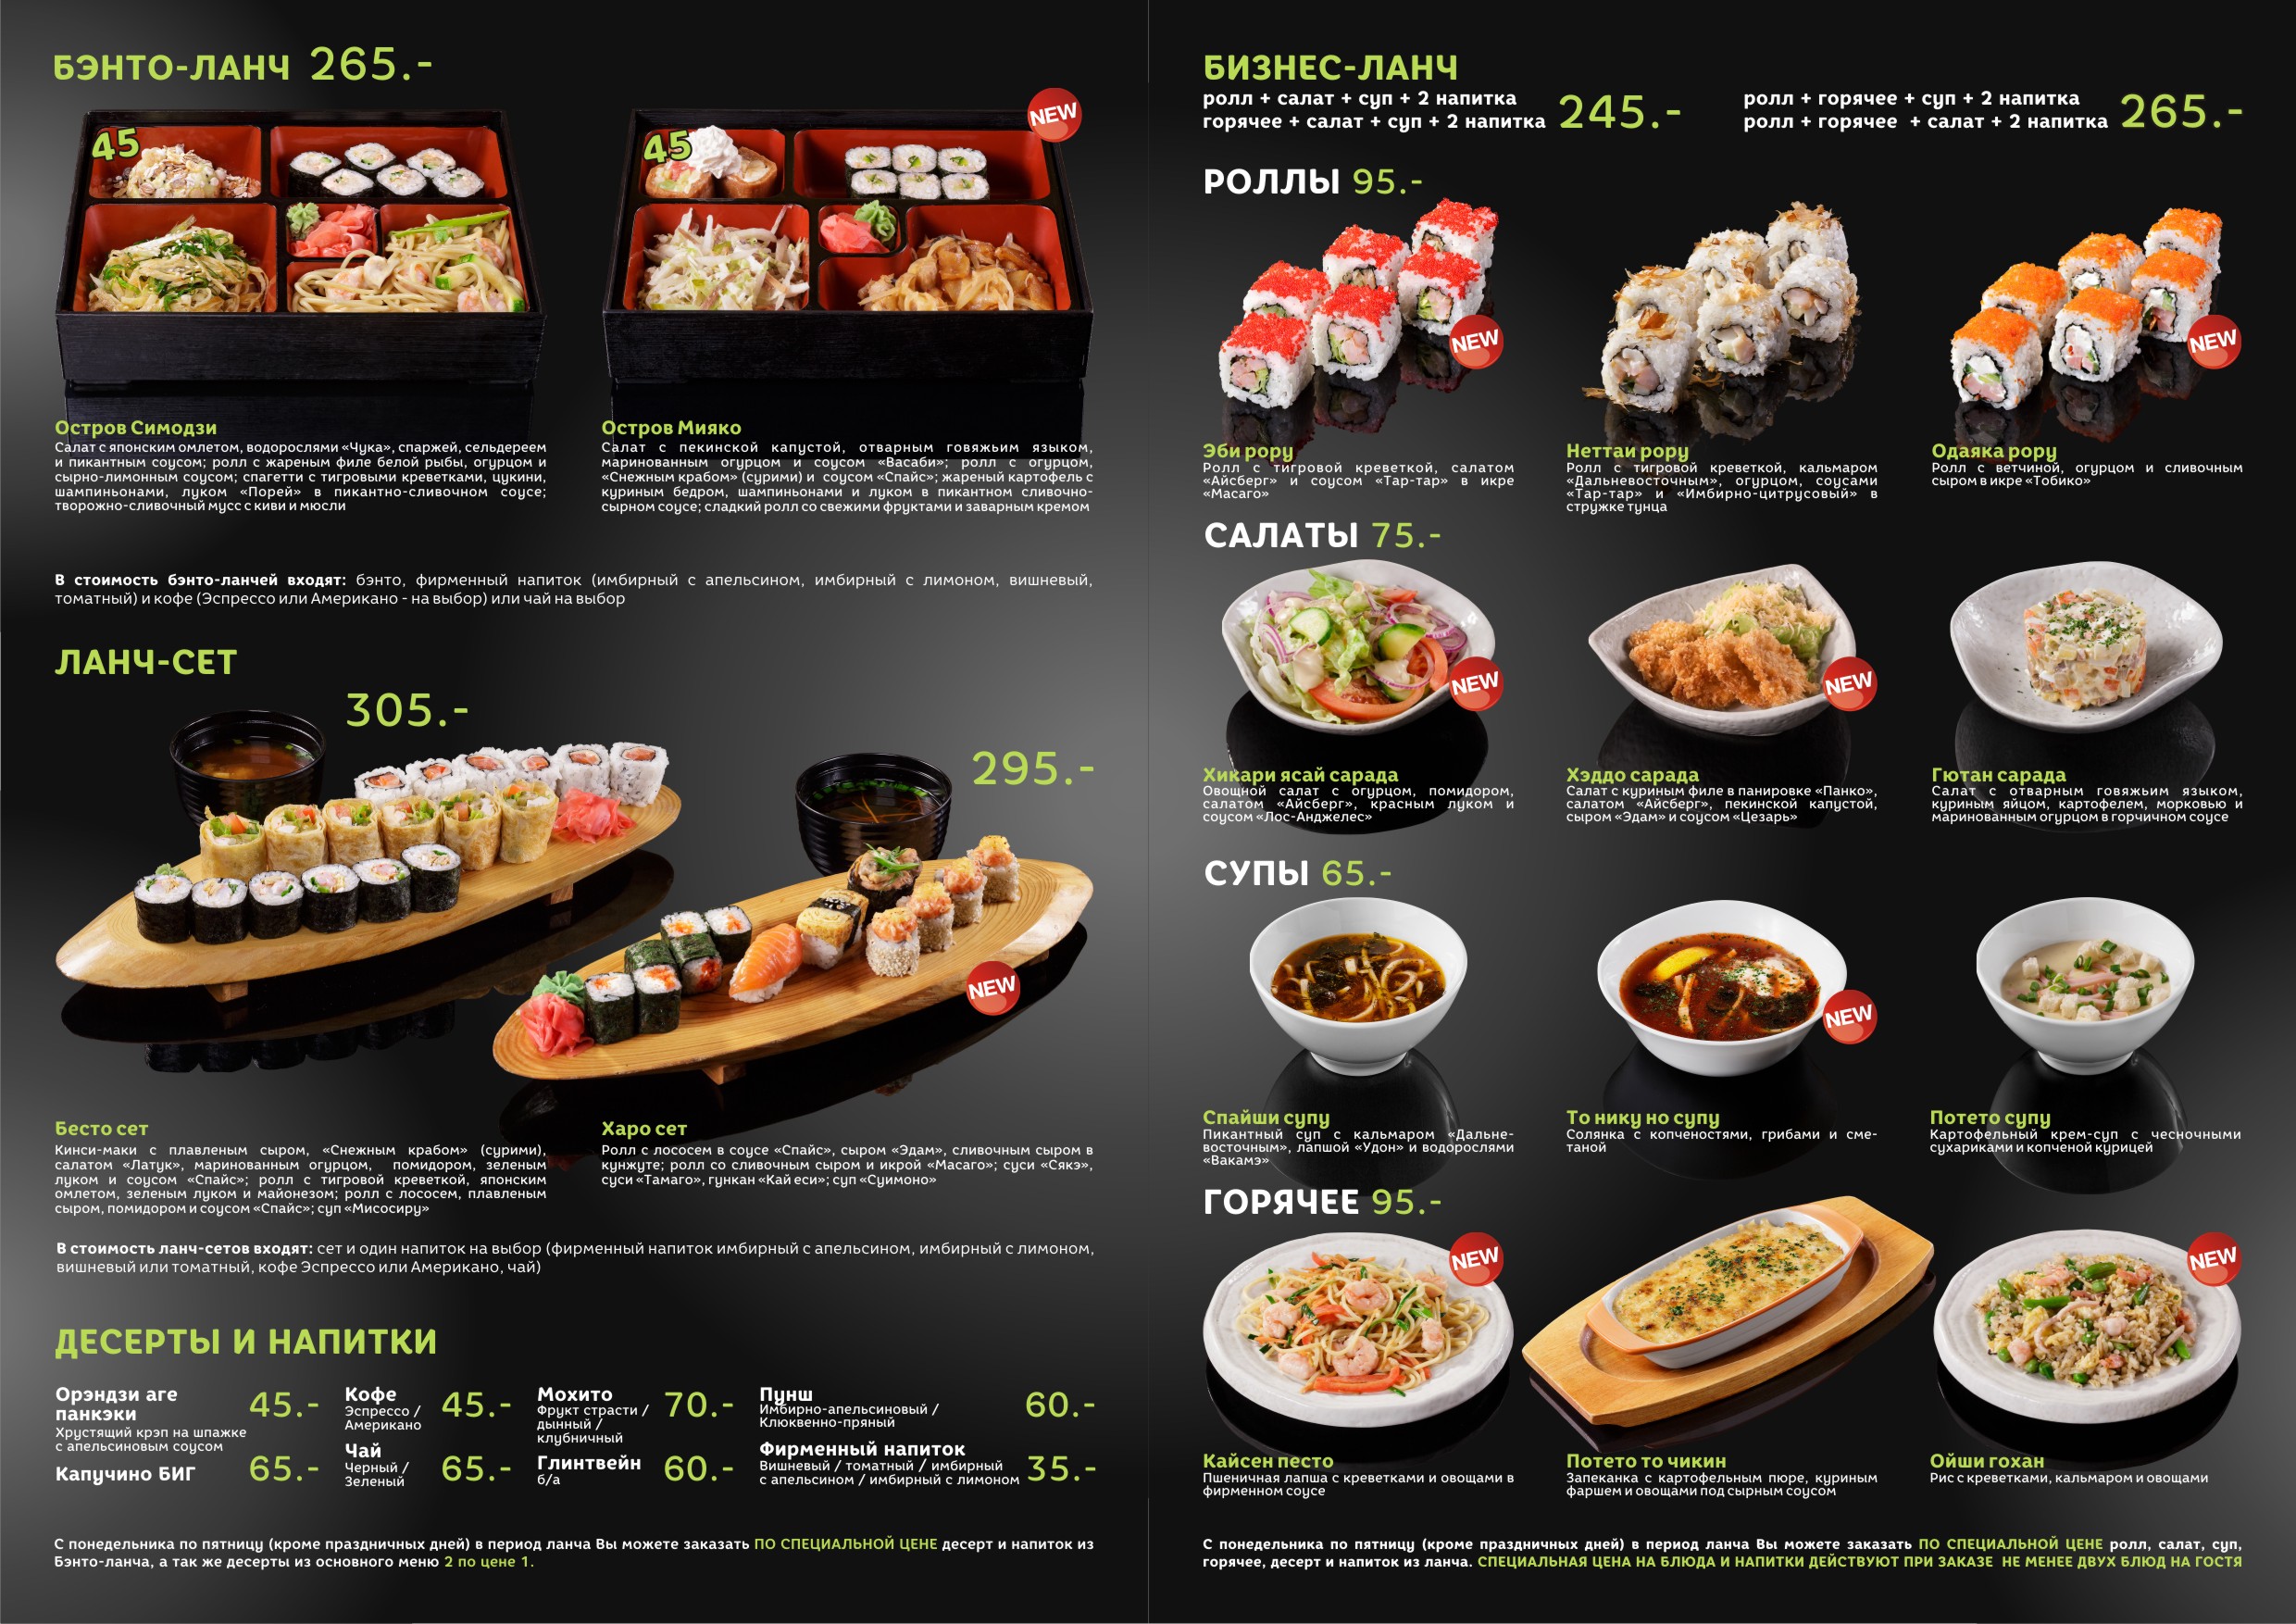 Сити суши белово меню бизнес ланч фото 30